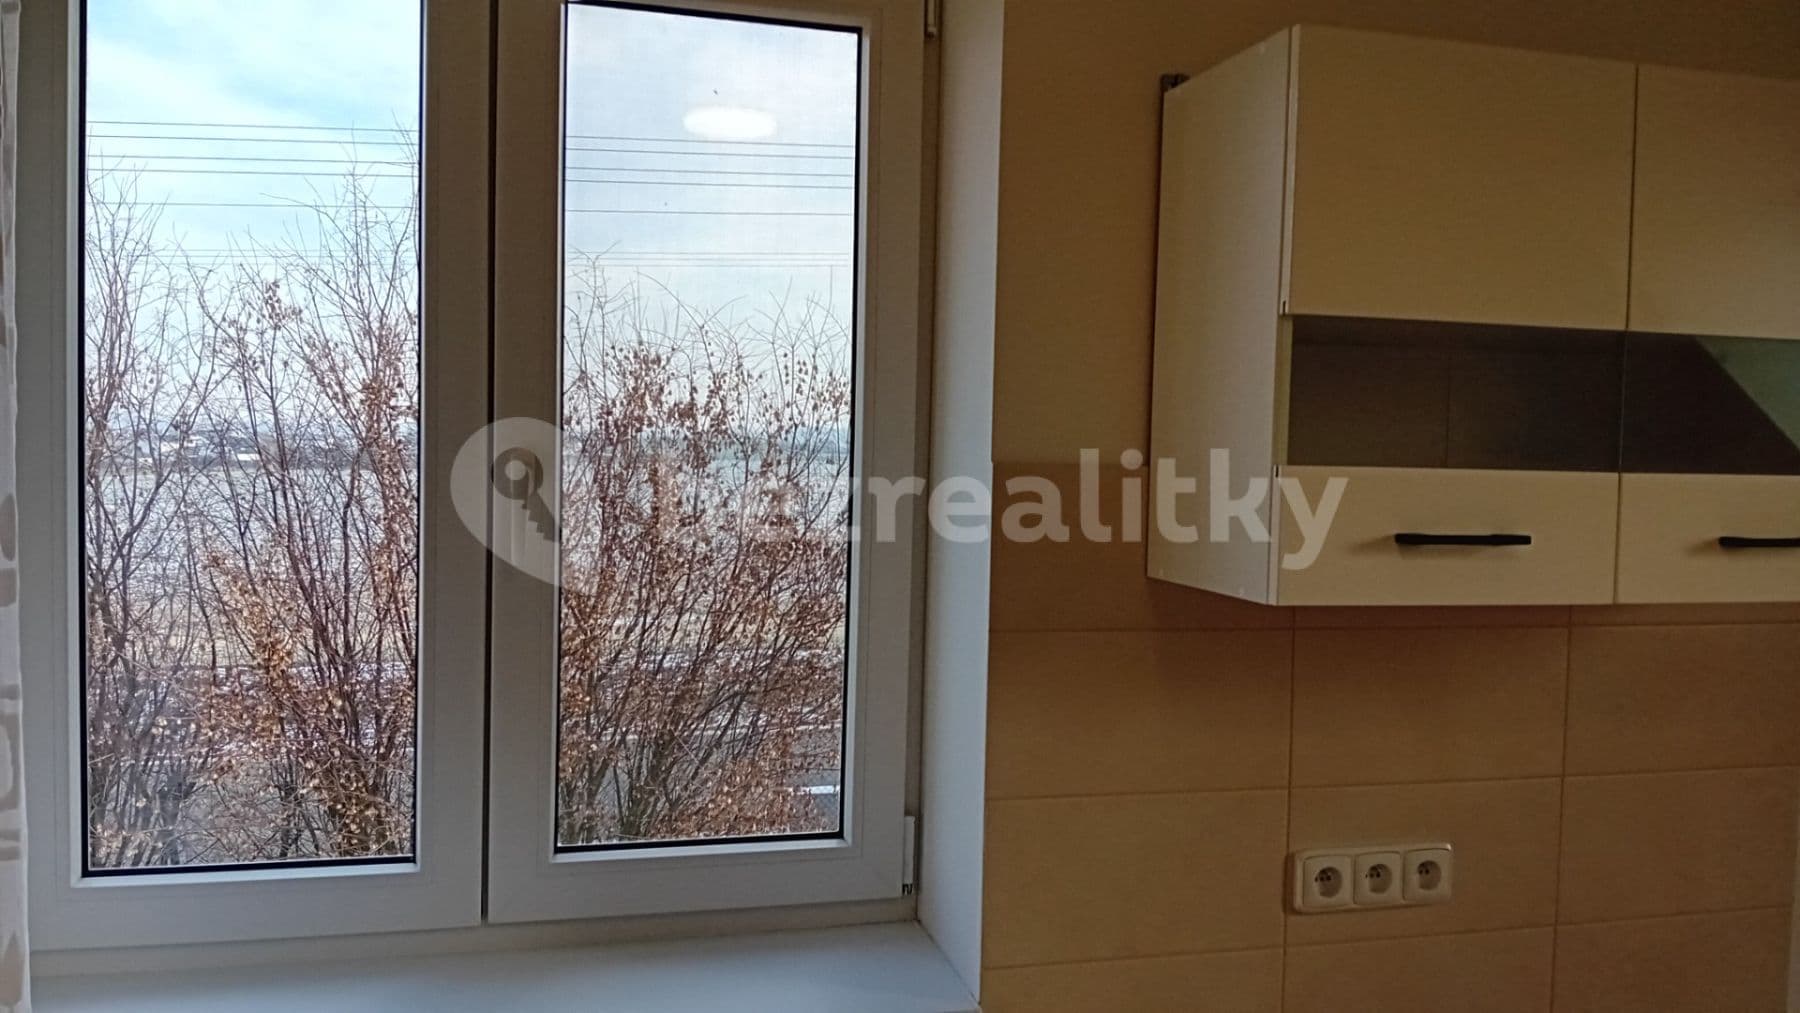 1 bedroom with open-plan kitchen flat to rent, 50 m², Zálesí, Úvaly, Středočeský Region